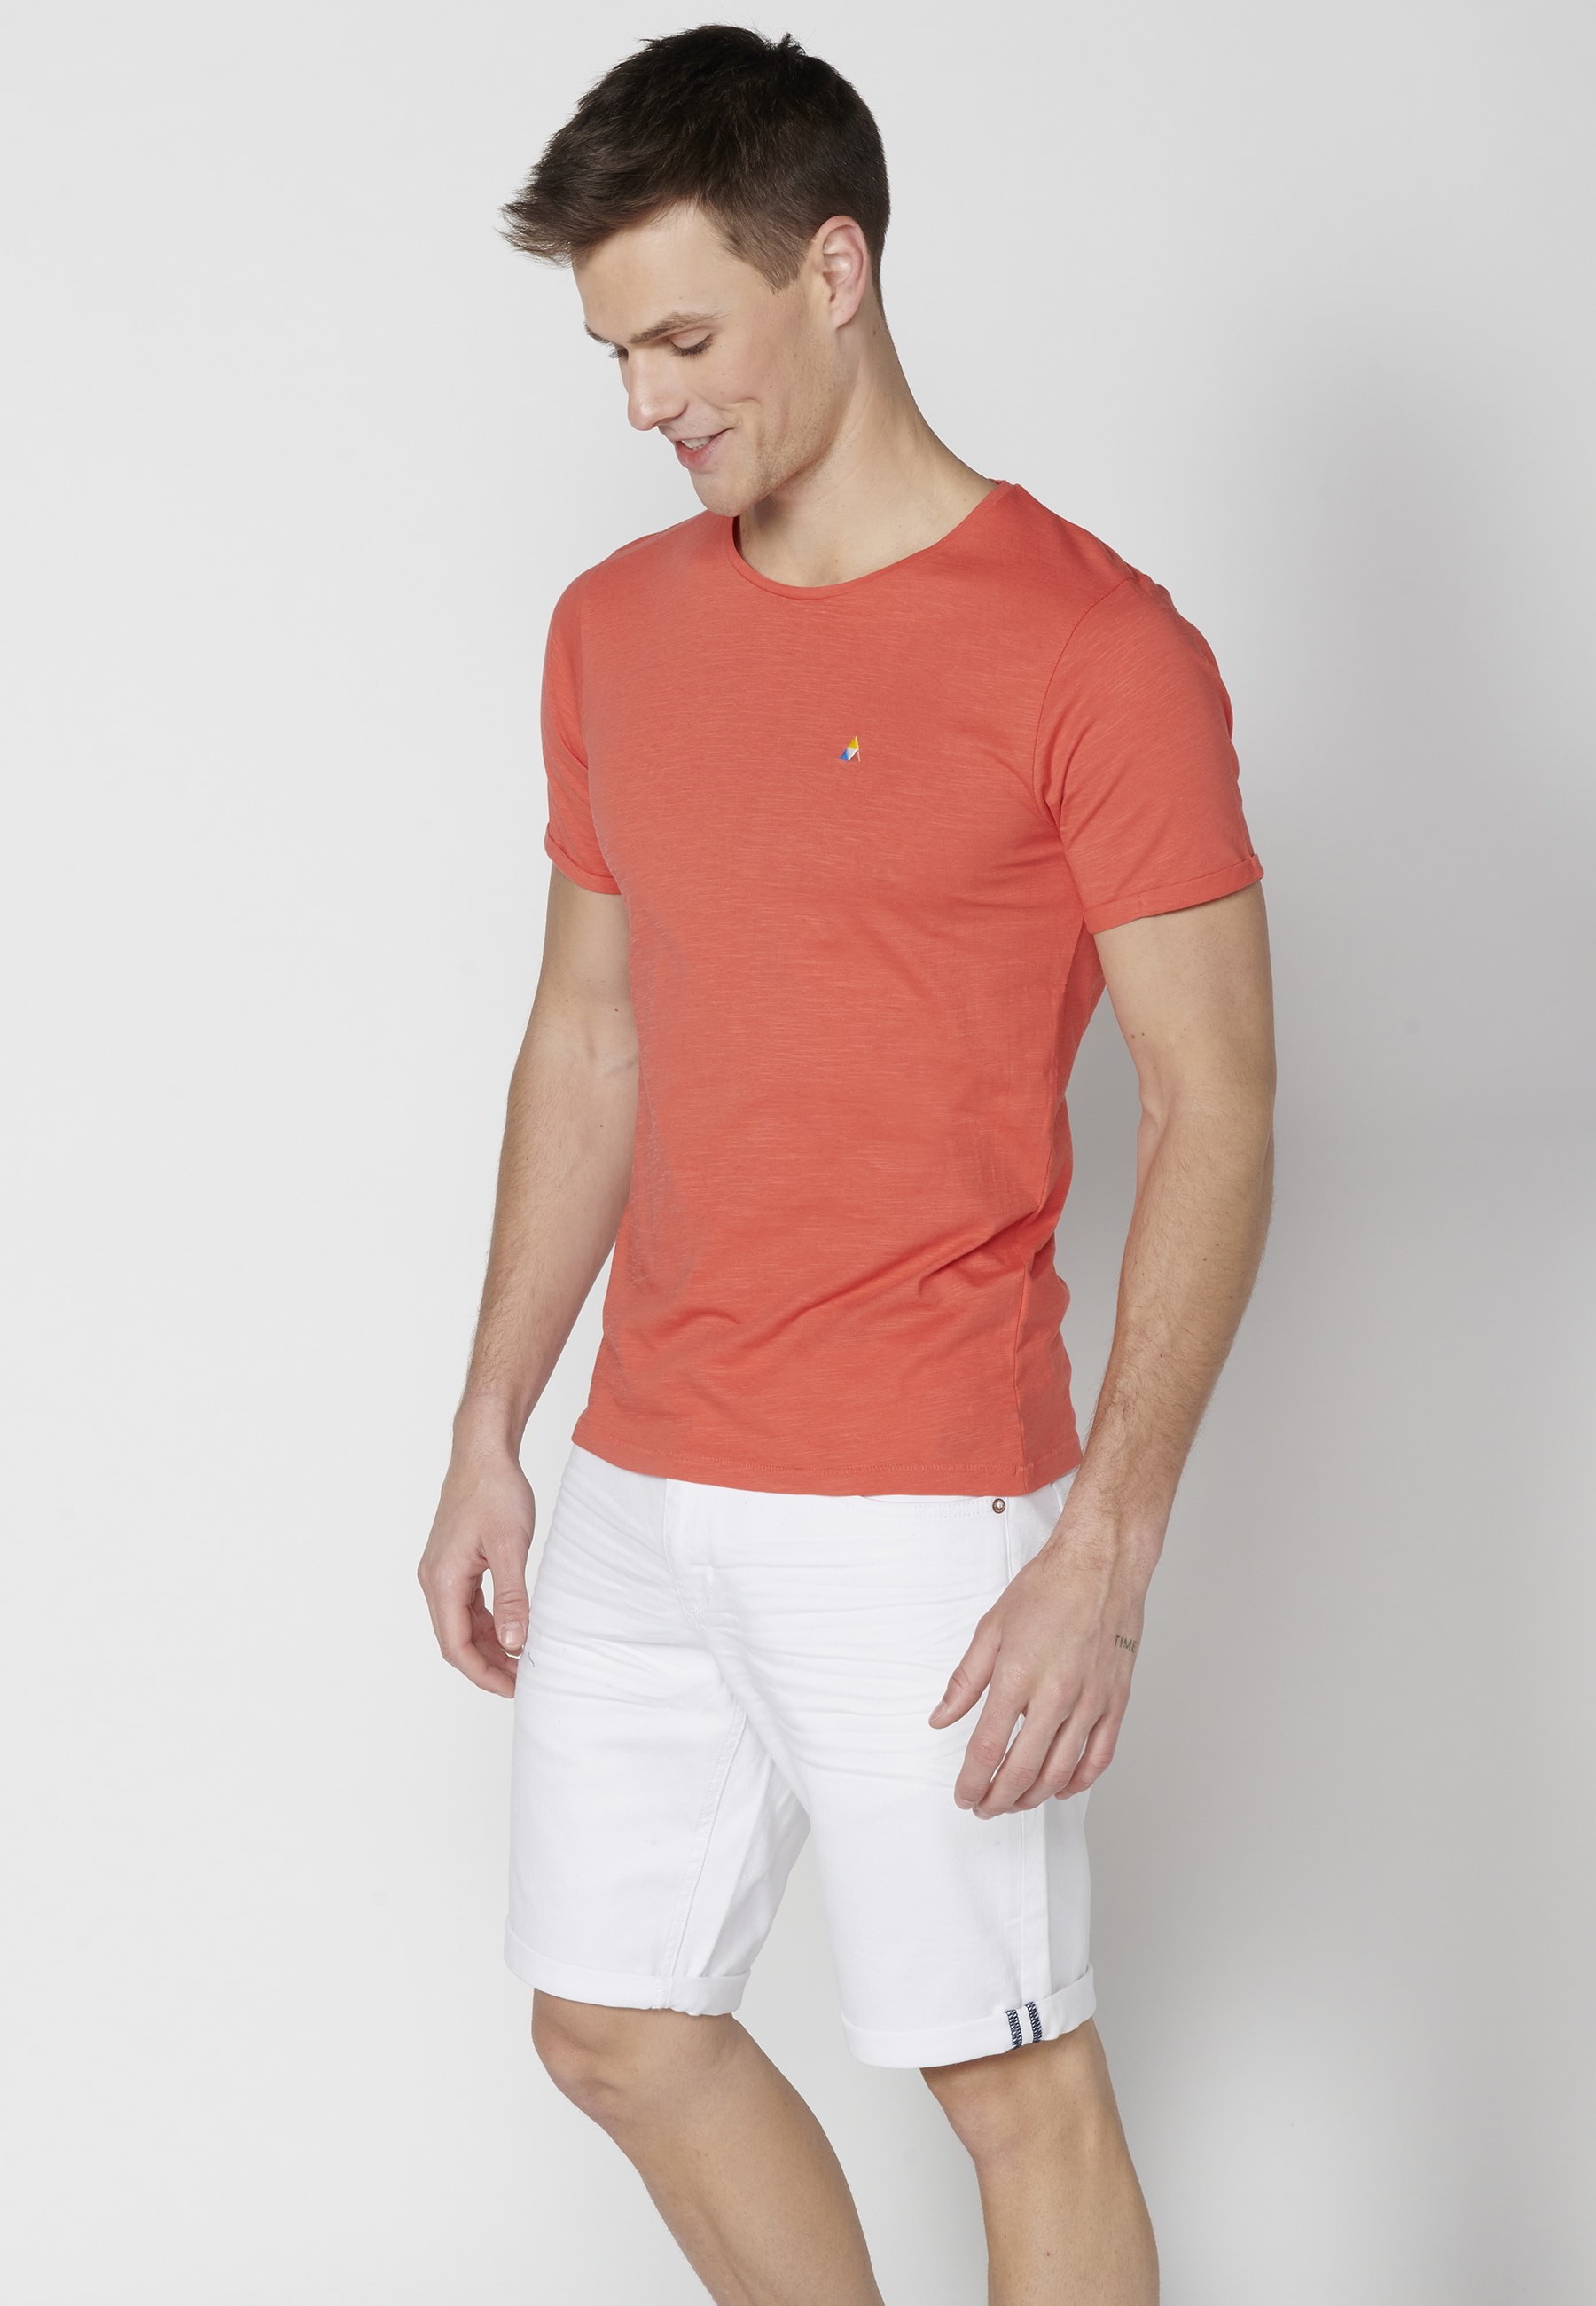 Men's Pink Cotton Short Sleeve T-shirt